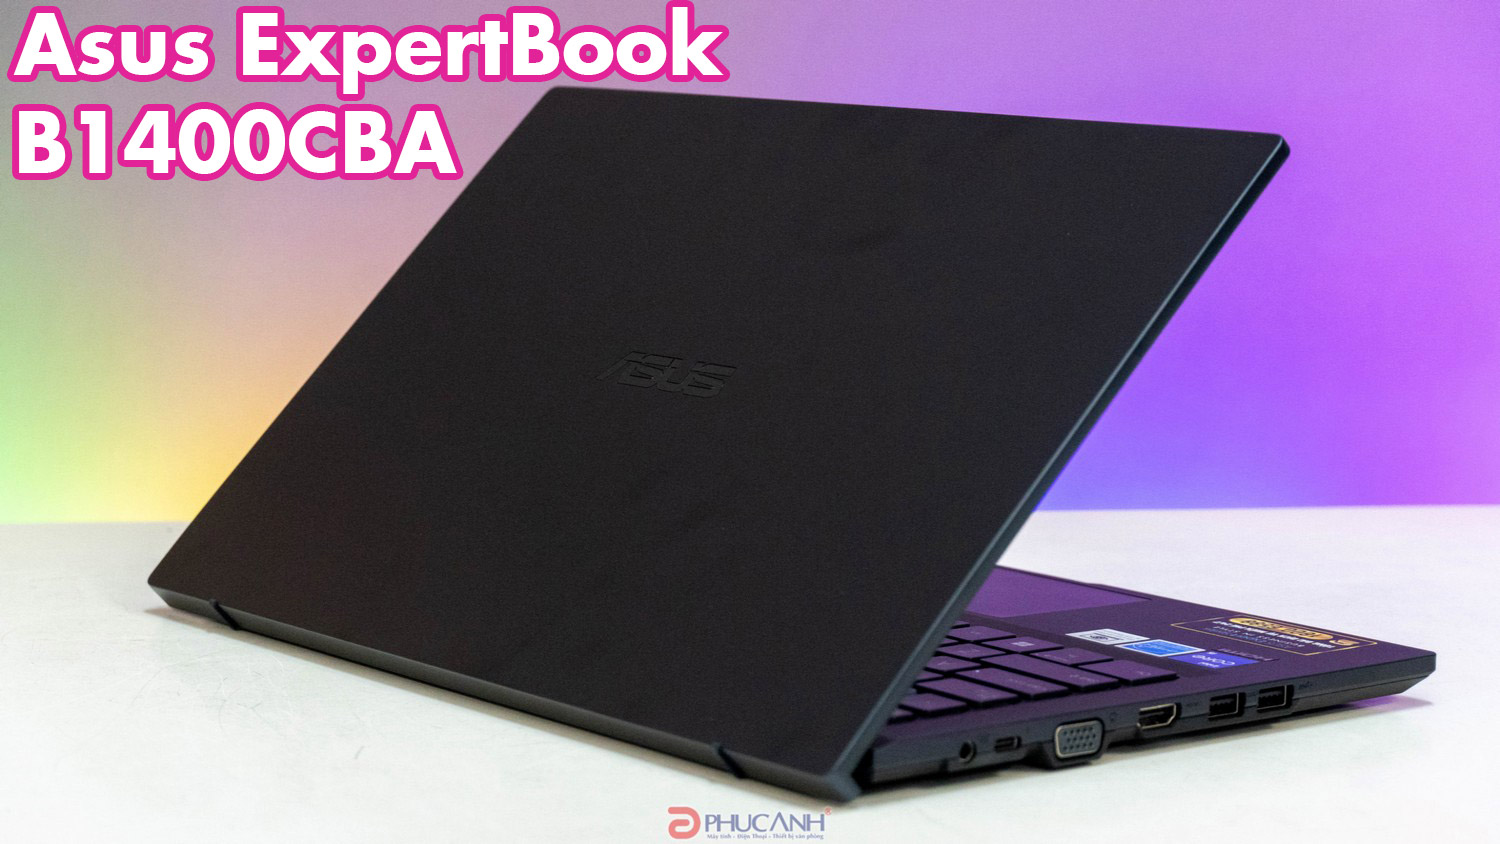 Đánh giá Laptop Asus ExpertBook B1400CBA - Hiệu năng mạnh mẽ, thiết kế ấn tượng cho doanh nhân